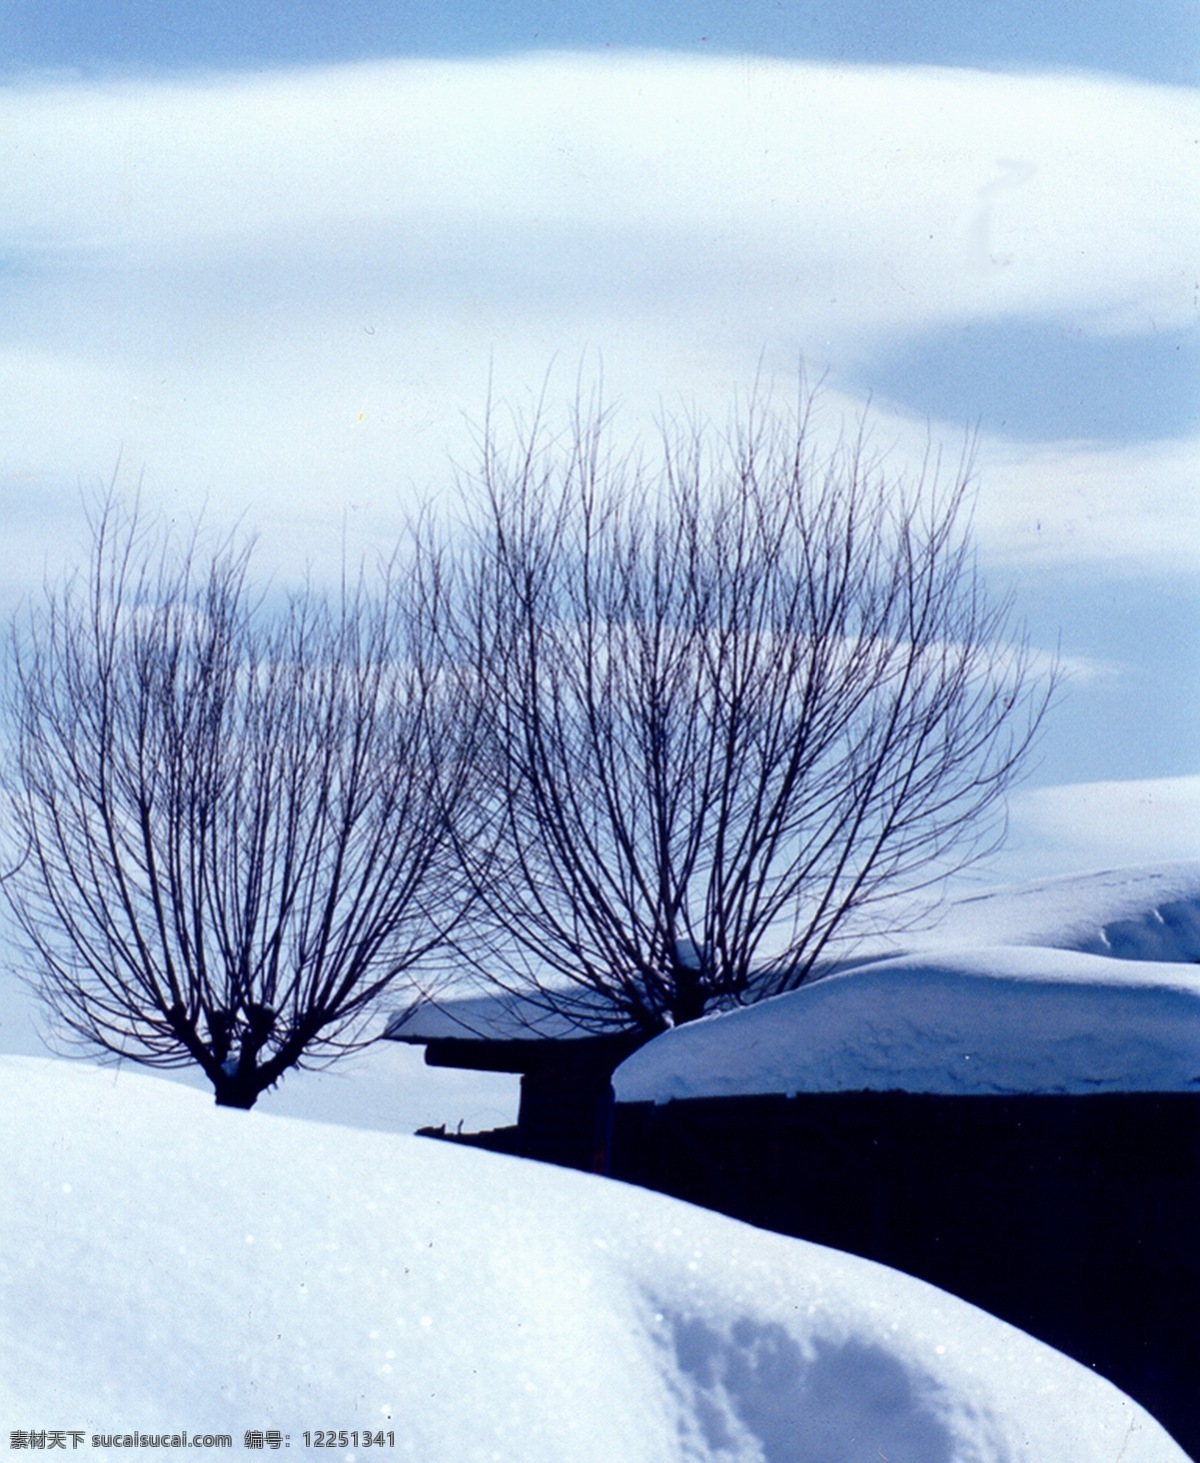 银白 雪地 树 超大 春夏秋冬 风景 高清 摄影图 唯美 自然 自然景观 生活 旅游餐饮